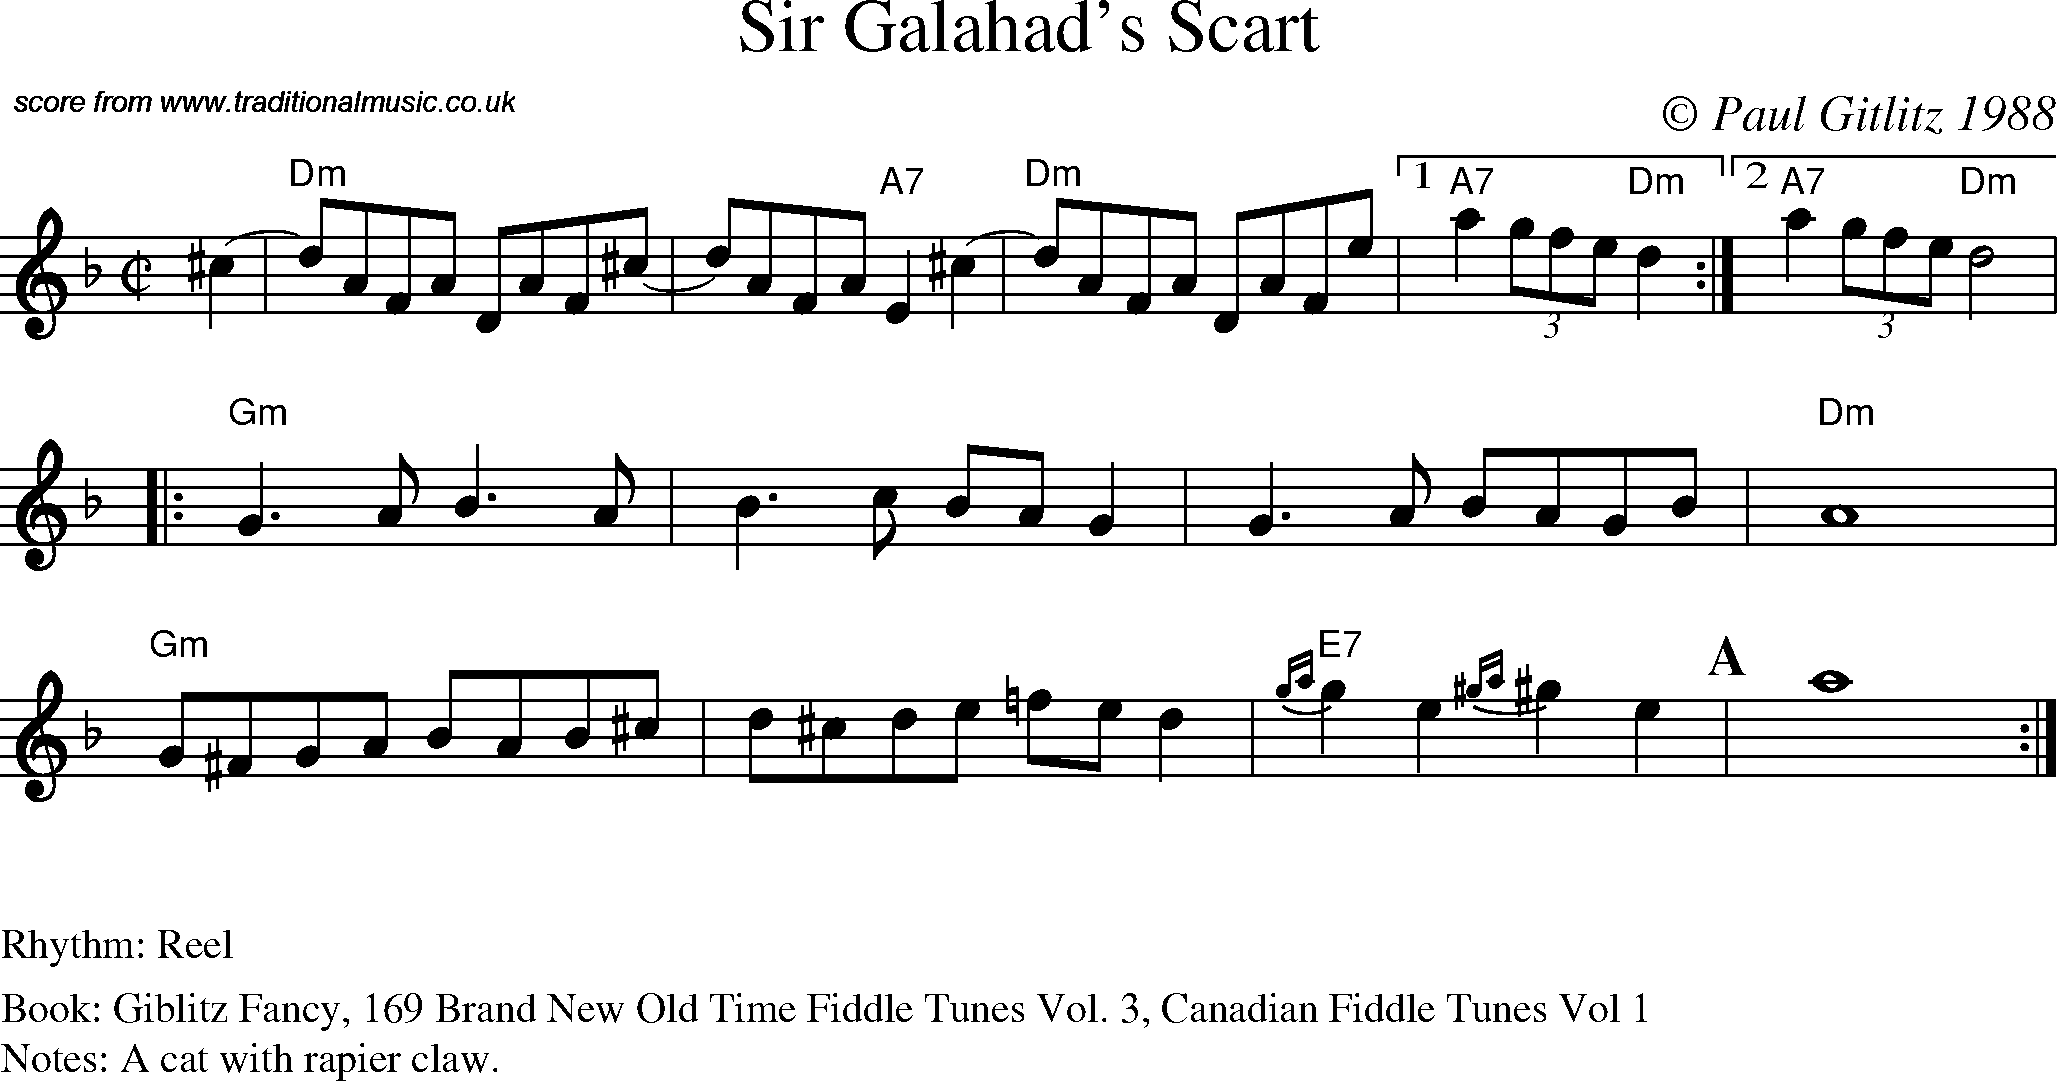 Sheet Music Score for Reel - Sir Galahad's Scart